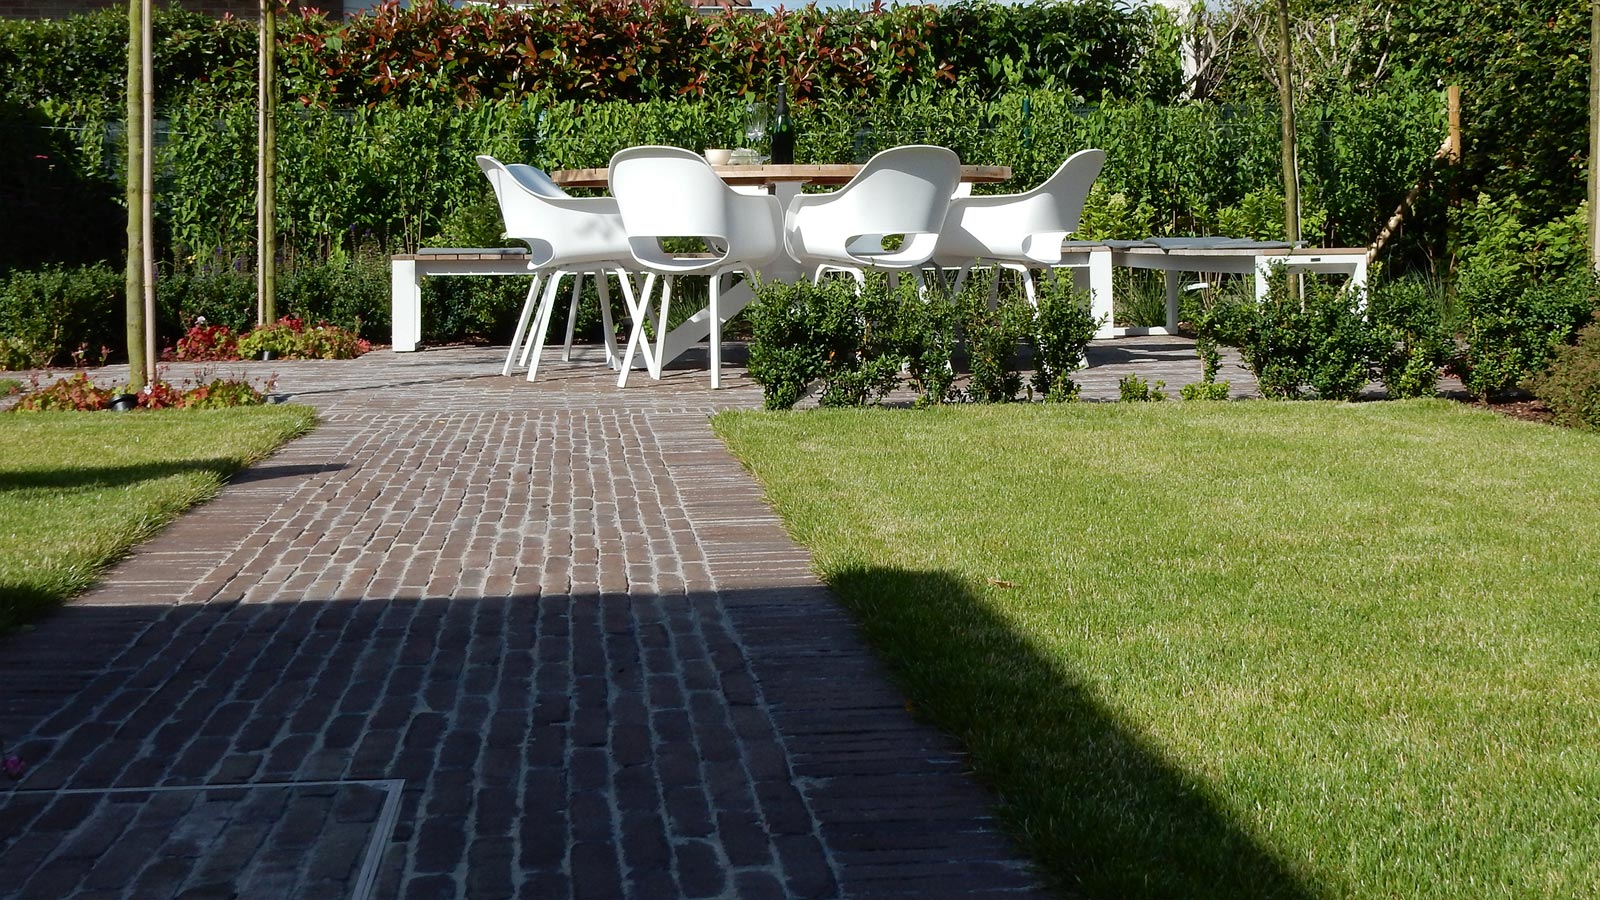 Voorbeeld van een moderne tuin met terras en paden in klinkers.